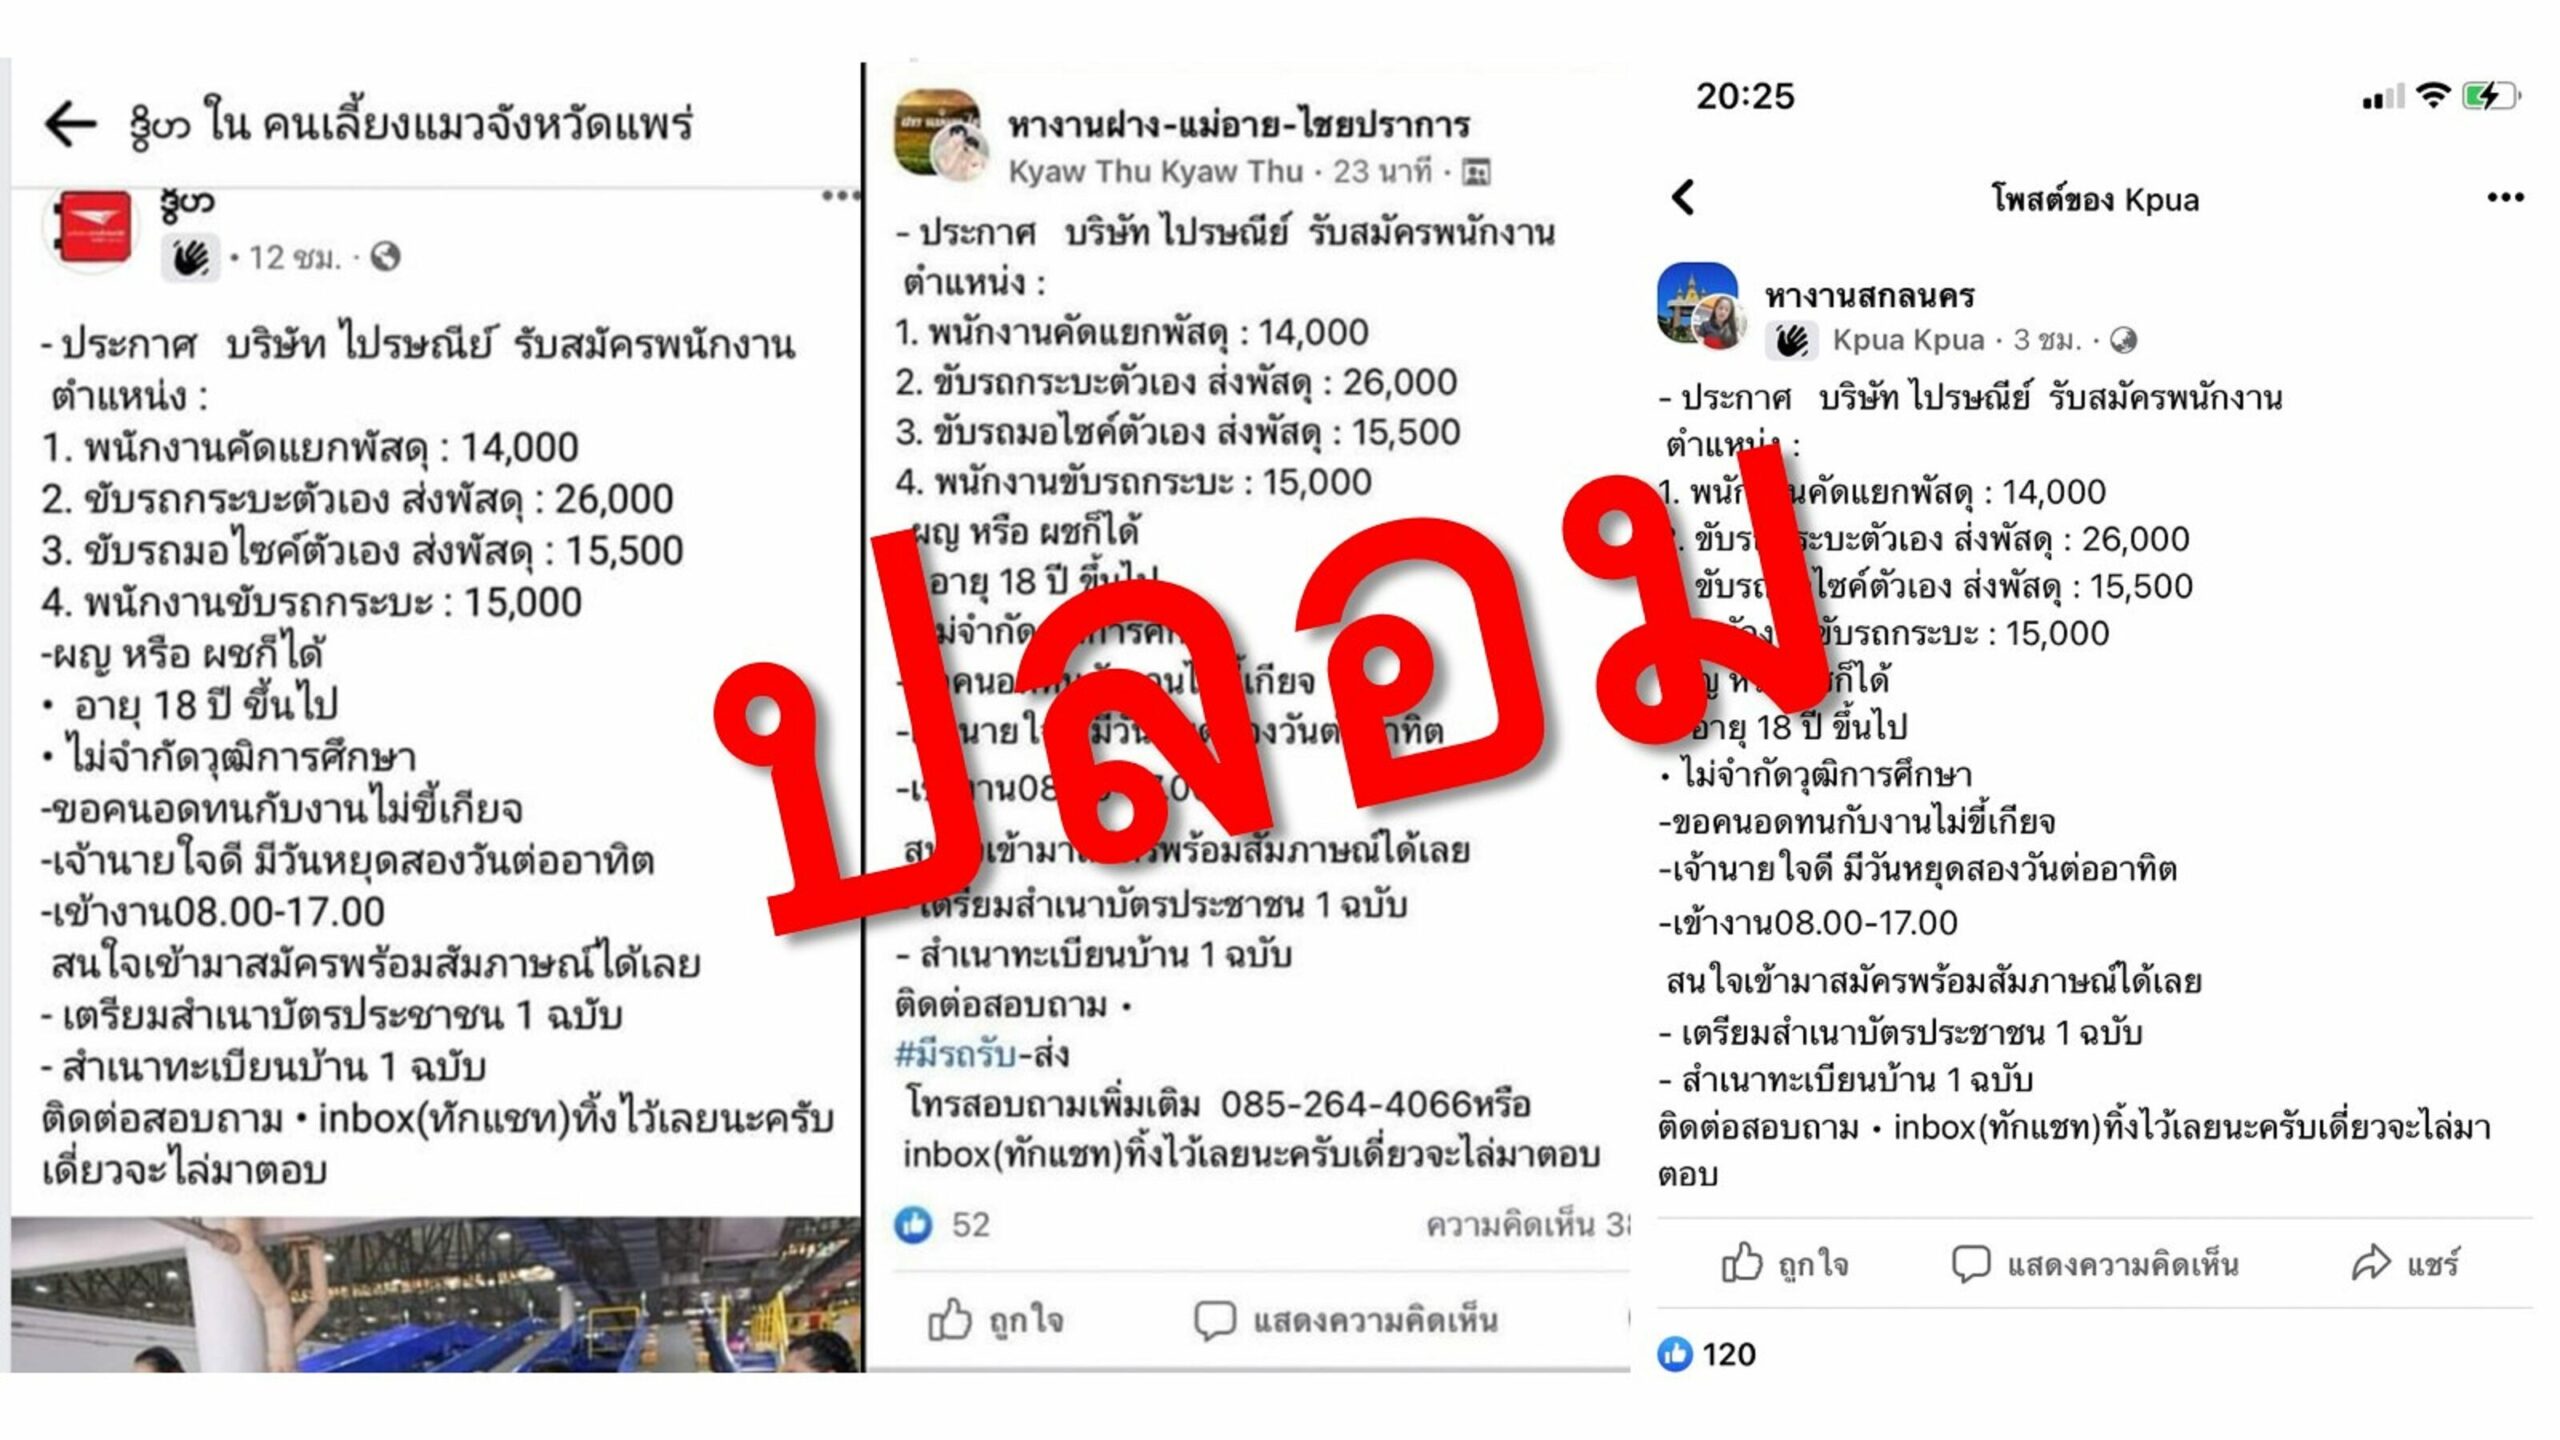 ไปรษณีย์ไทย เตือนอย่าหลงเชื่อประกาศรับสมัครงานบนสื่อสังคมออนไลน์ ชี้อาจเข้าข่ายมิจฉาชีพ หลอกลวงปชช.